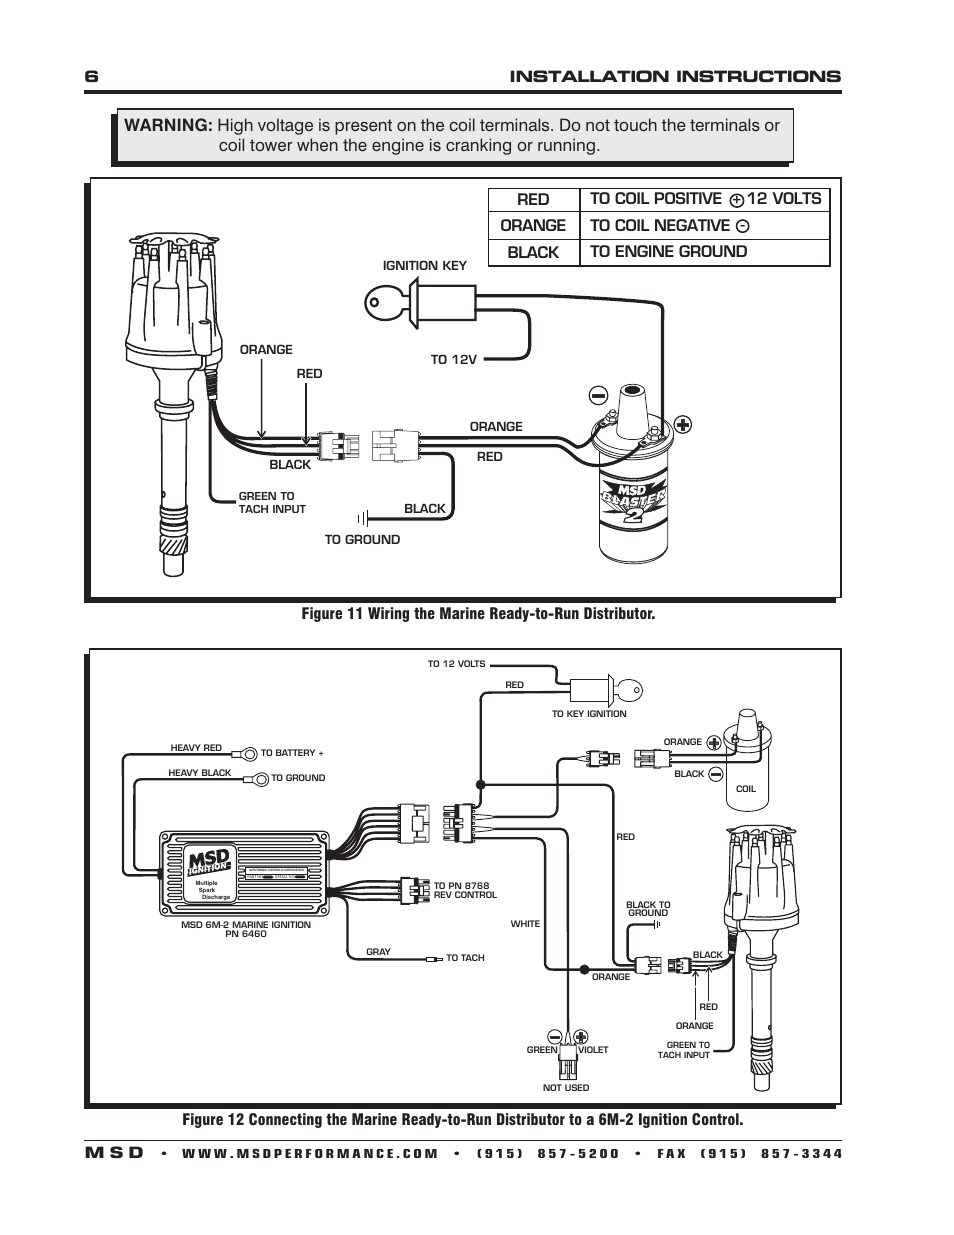 Msd Distributor Wiring Diagram
